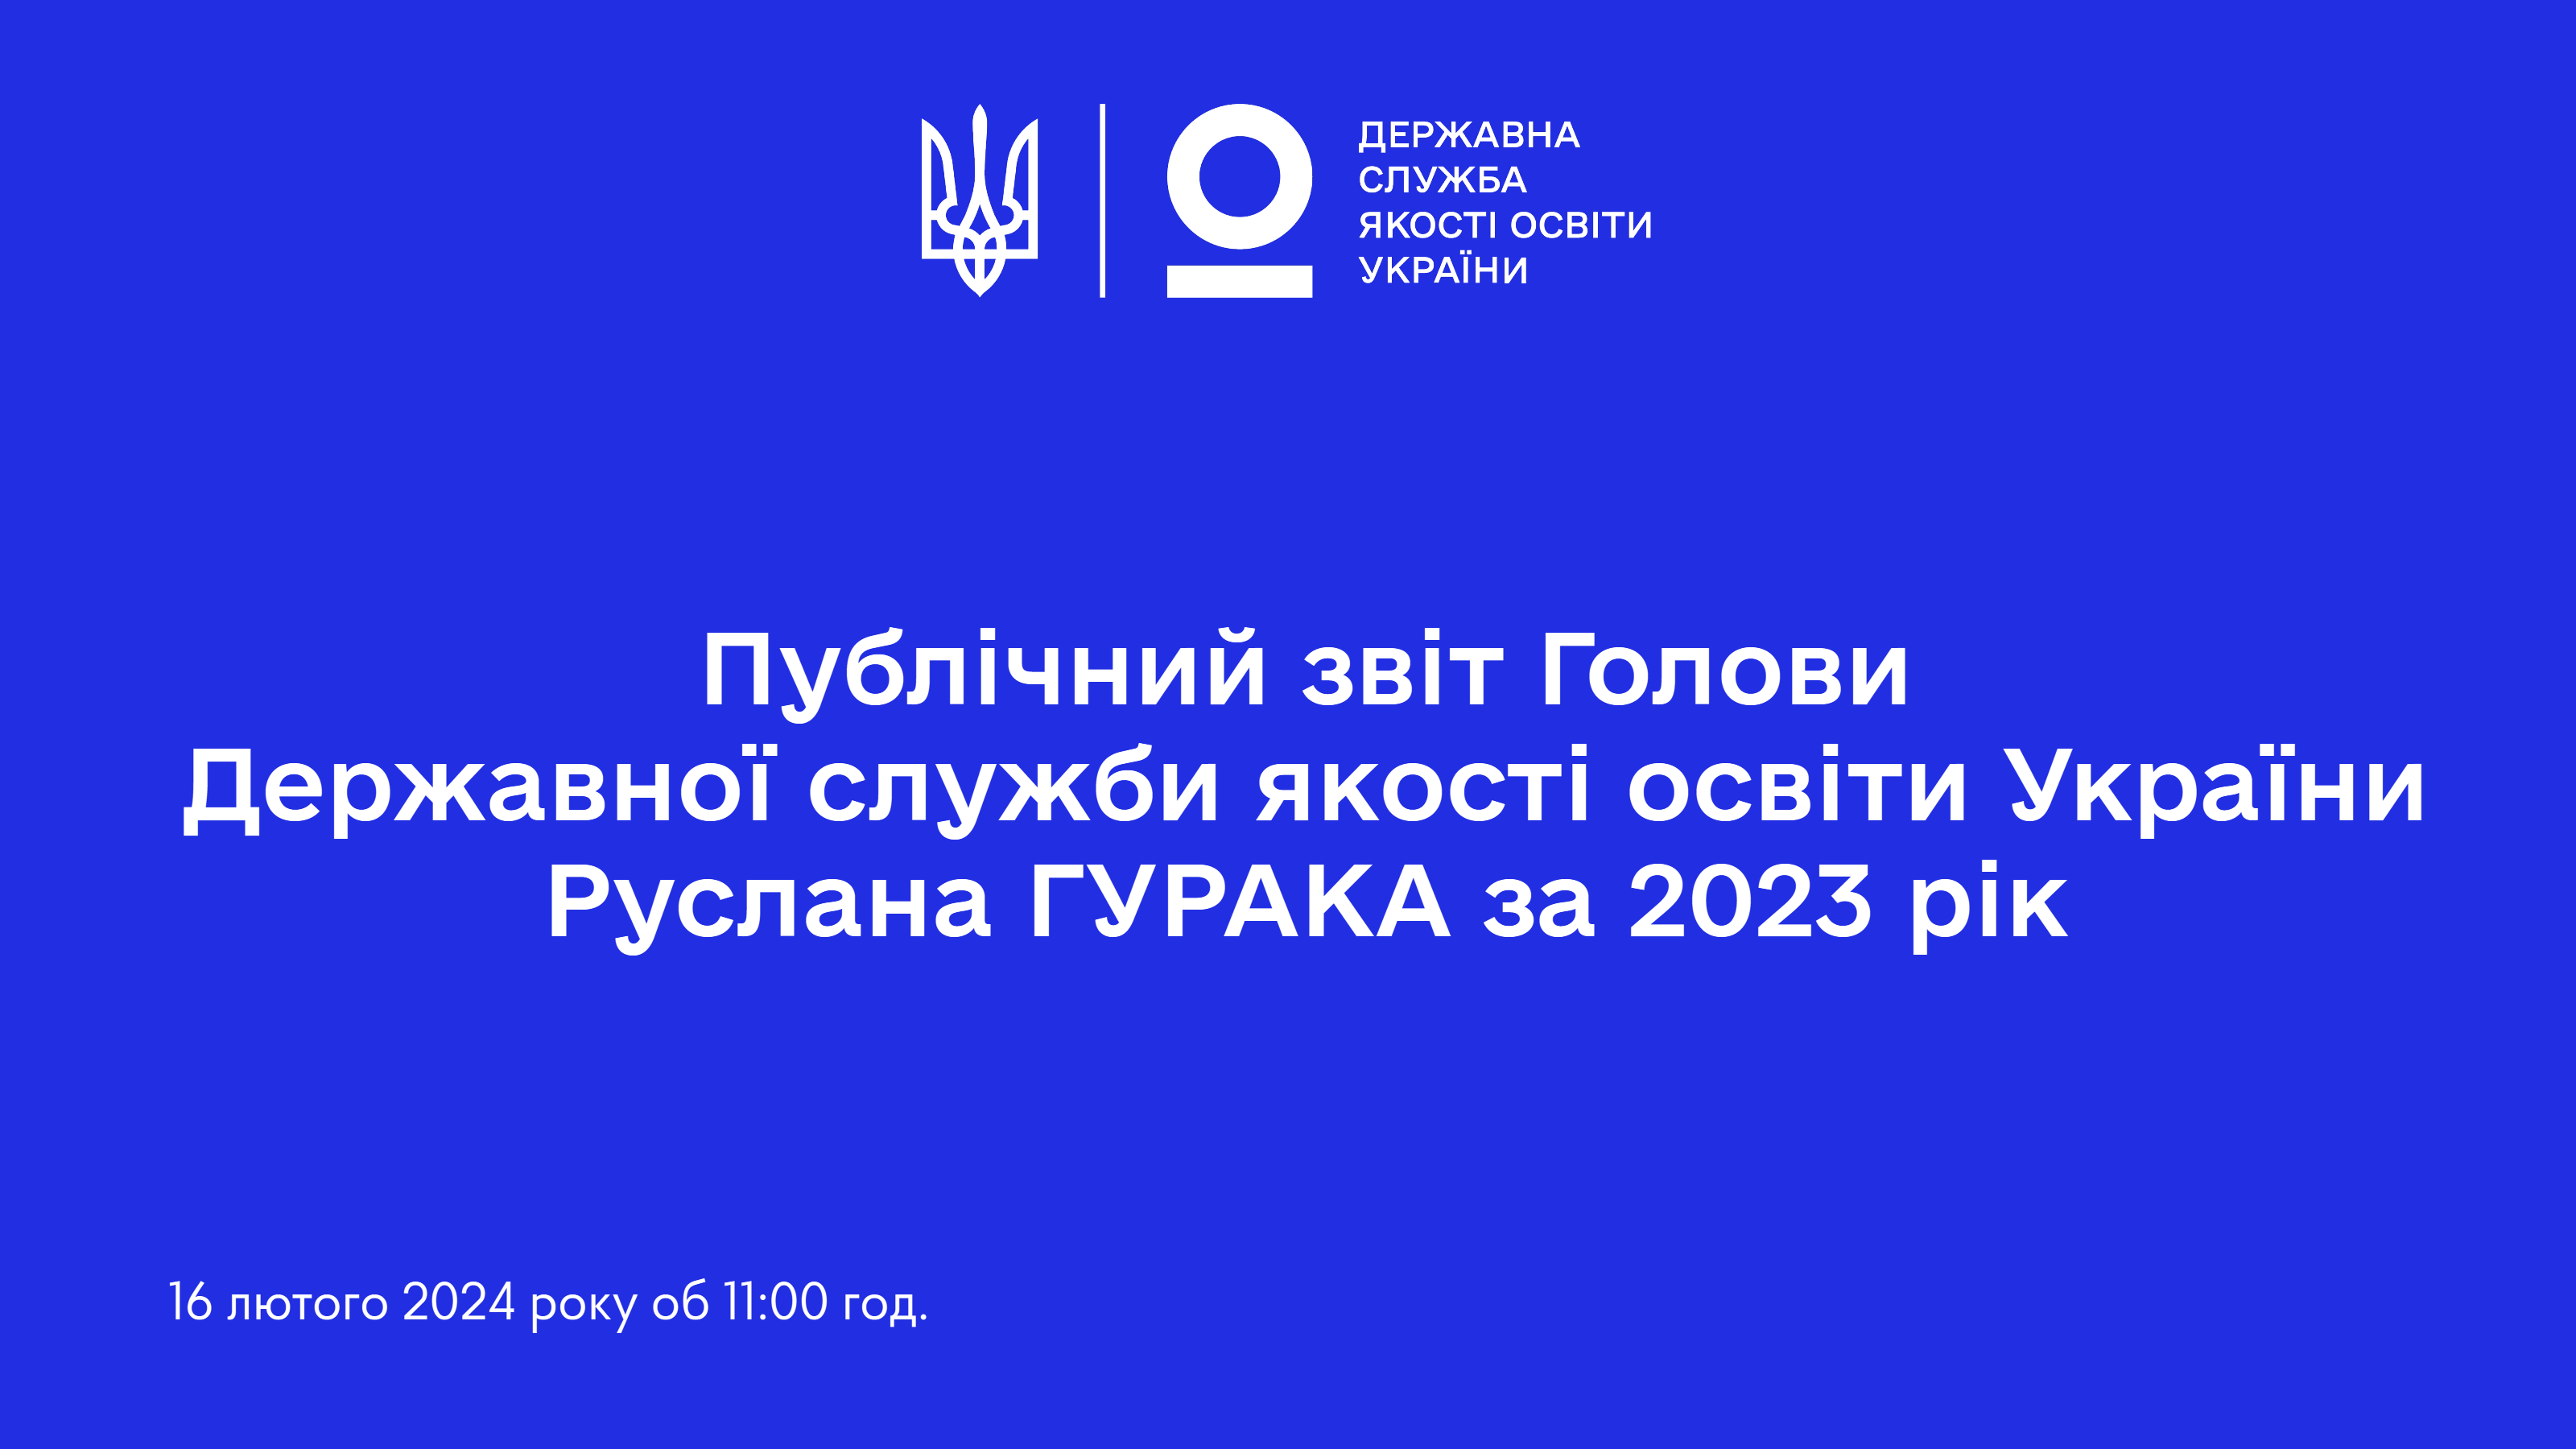 16 лютого 2024 року відбудеться публічний звіт Голови Державної служби якості освіти України Руслана ГУРАКА